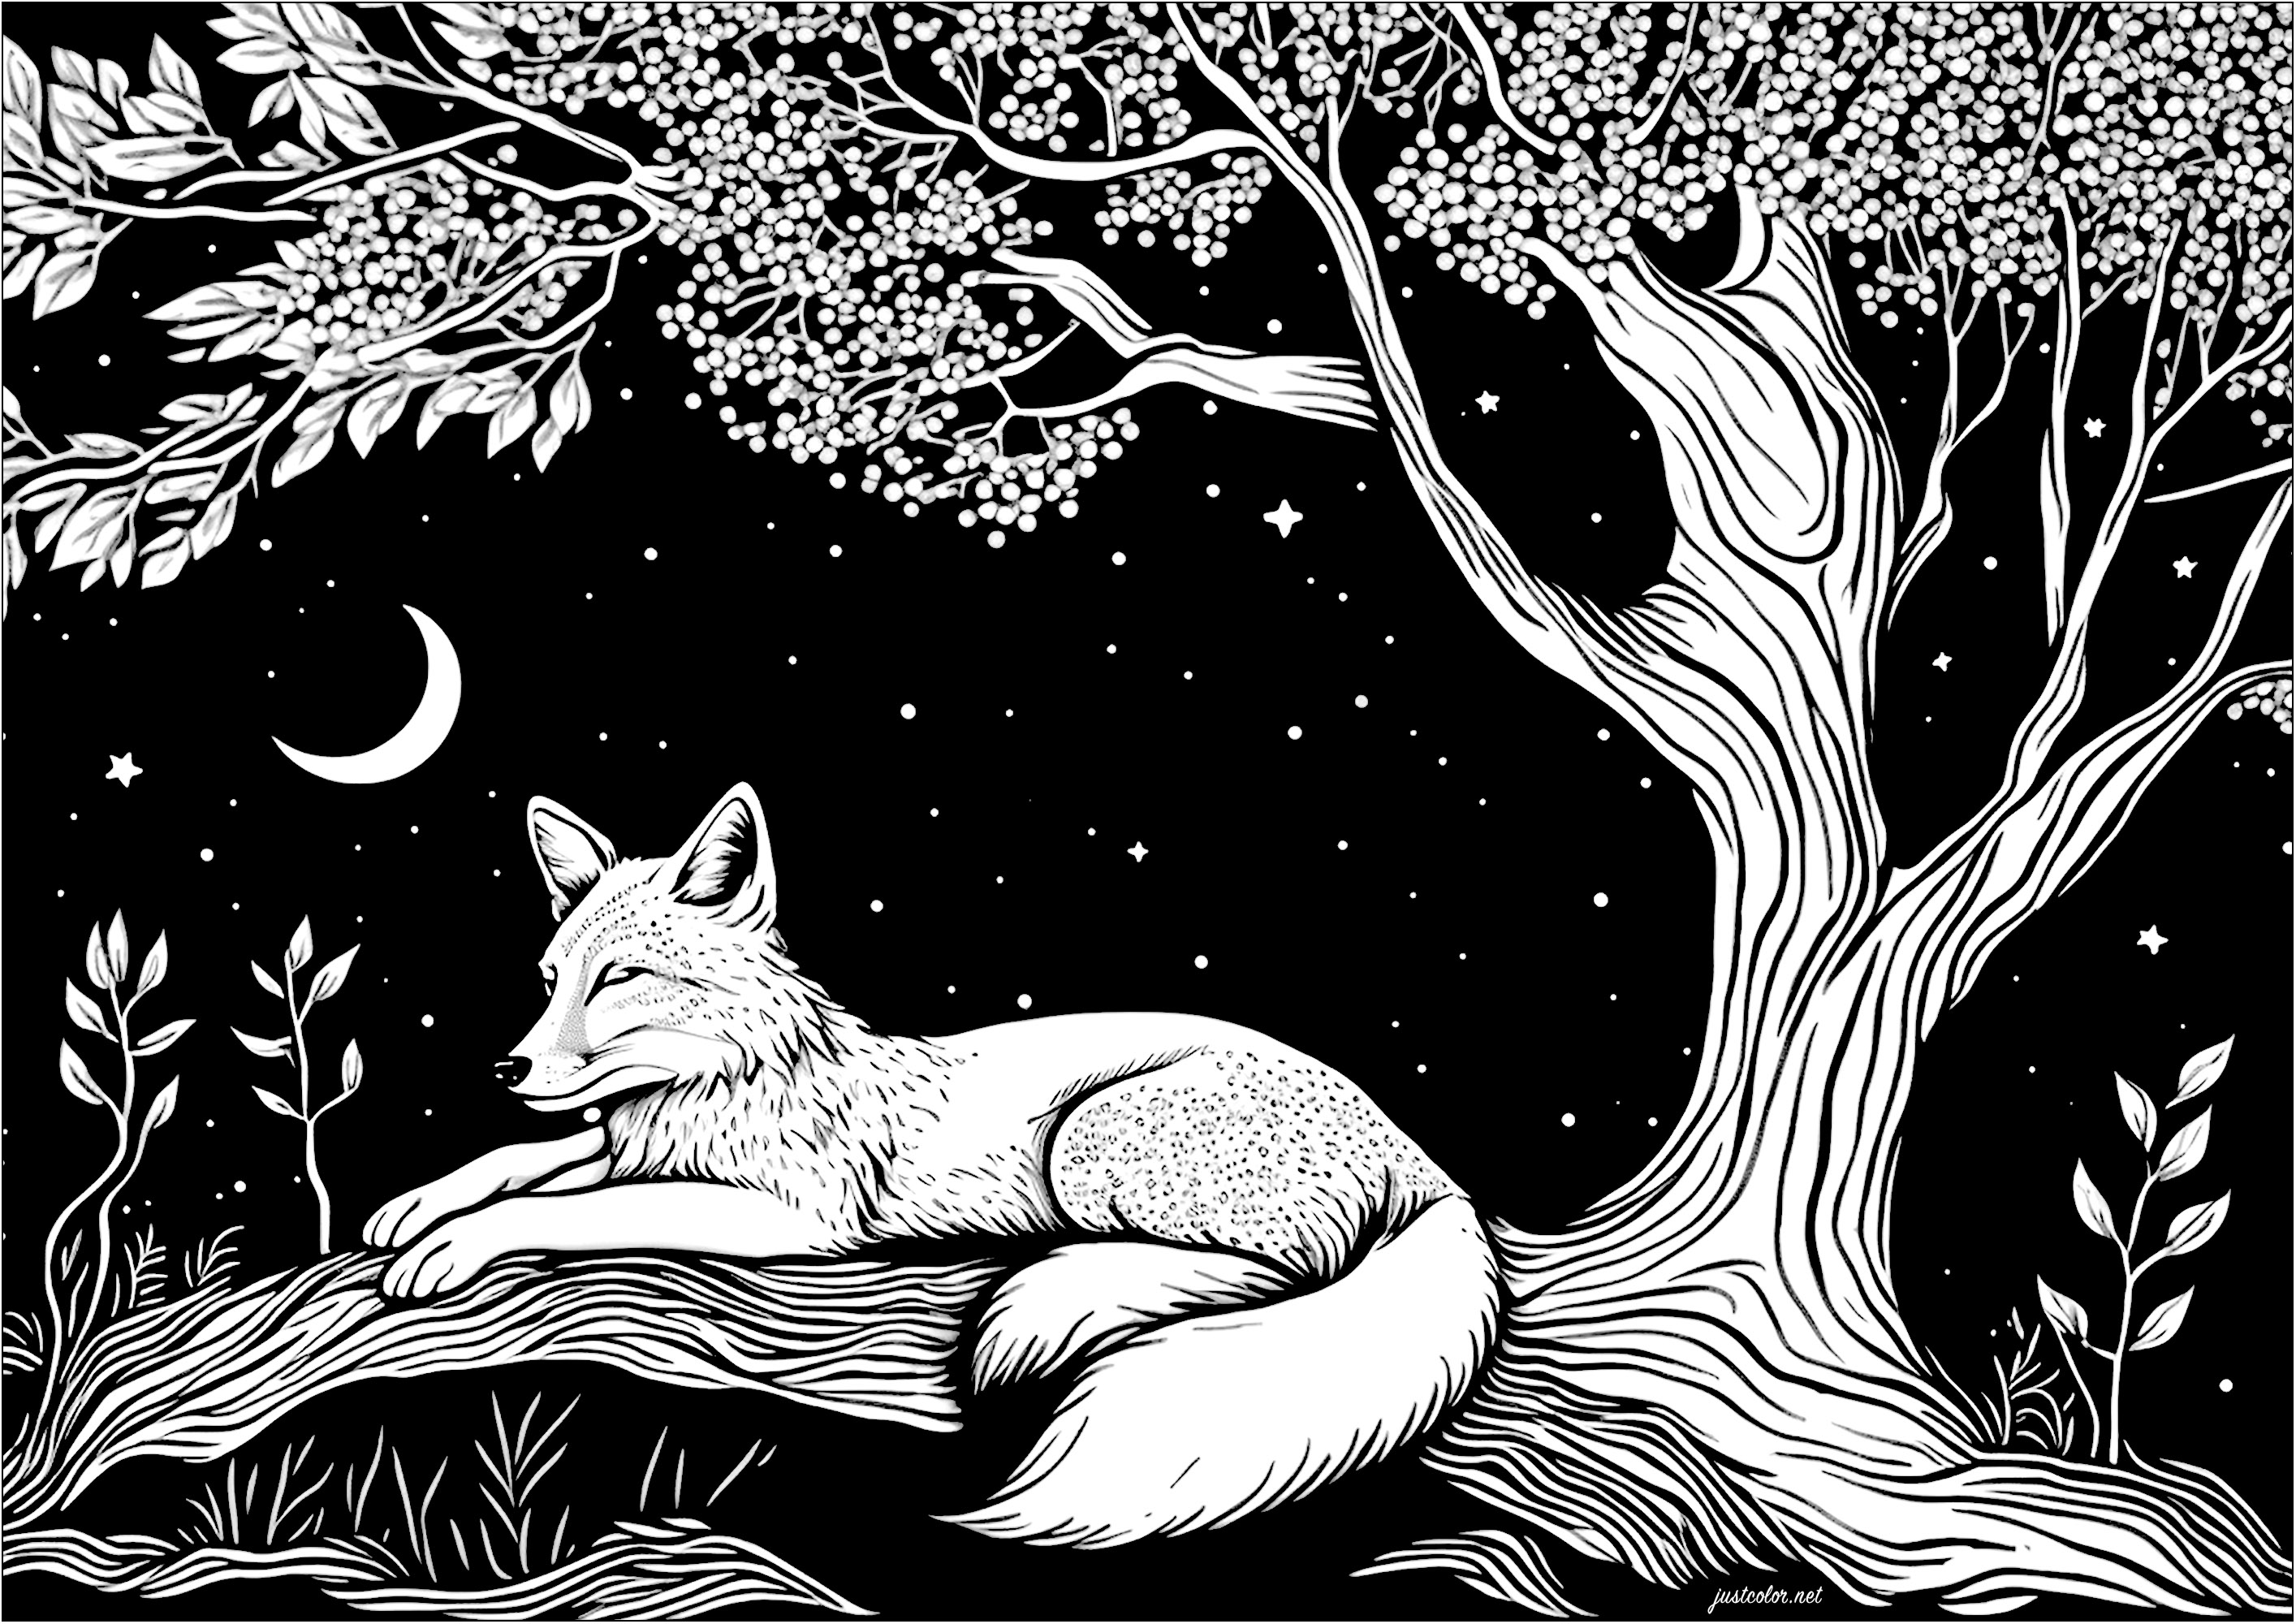 Colorazione di una volpe che dorme al chiaro di luna. È una notte limpida e tranquilla e una volpe pacifica sta dormendo sotto un albero e le stelle. È circondata da un cielo stellato e da un quarto di luna.